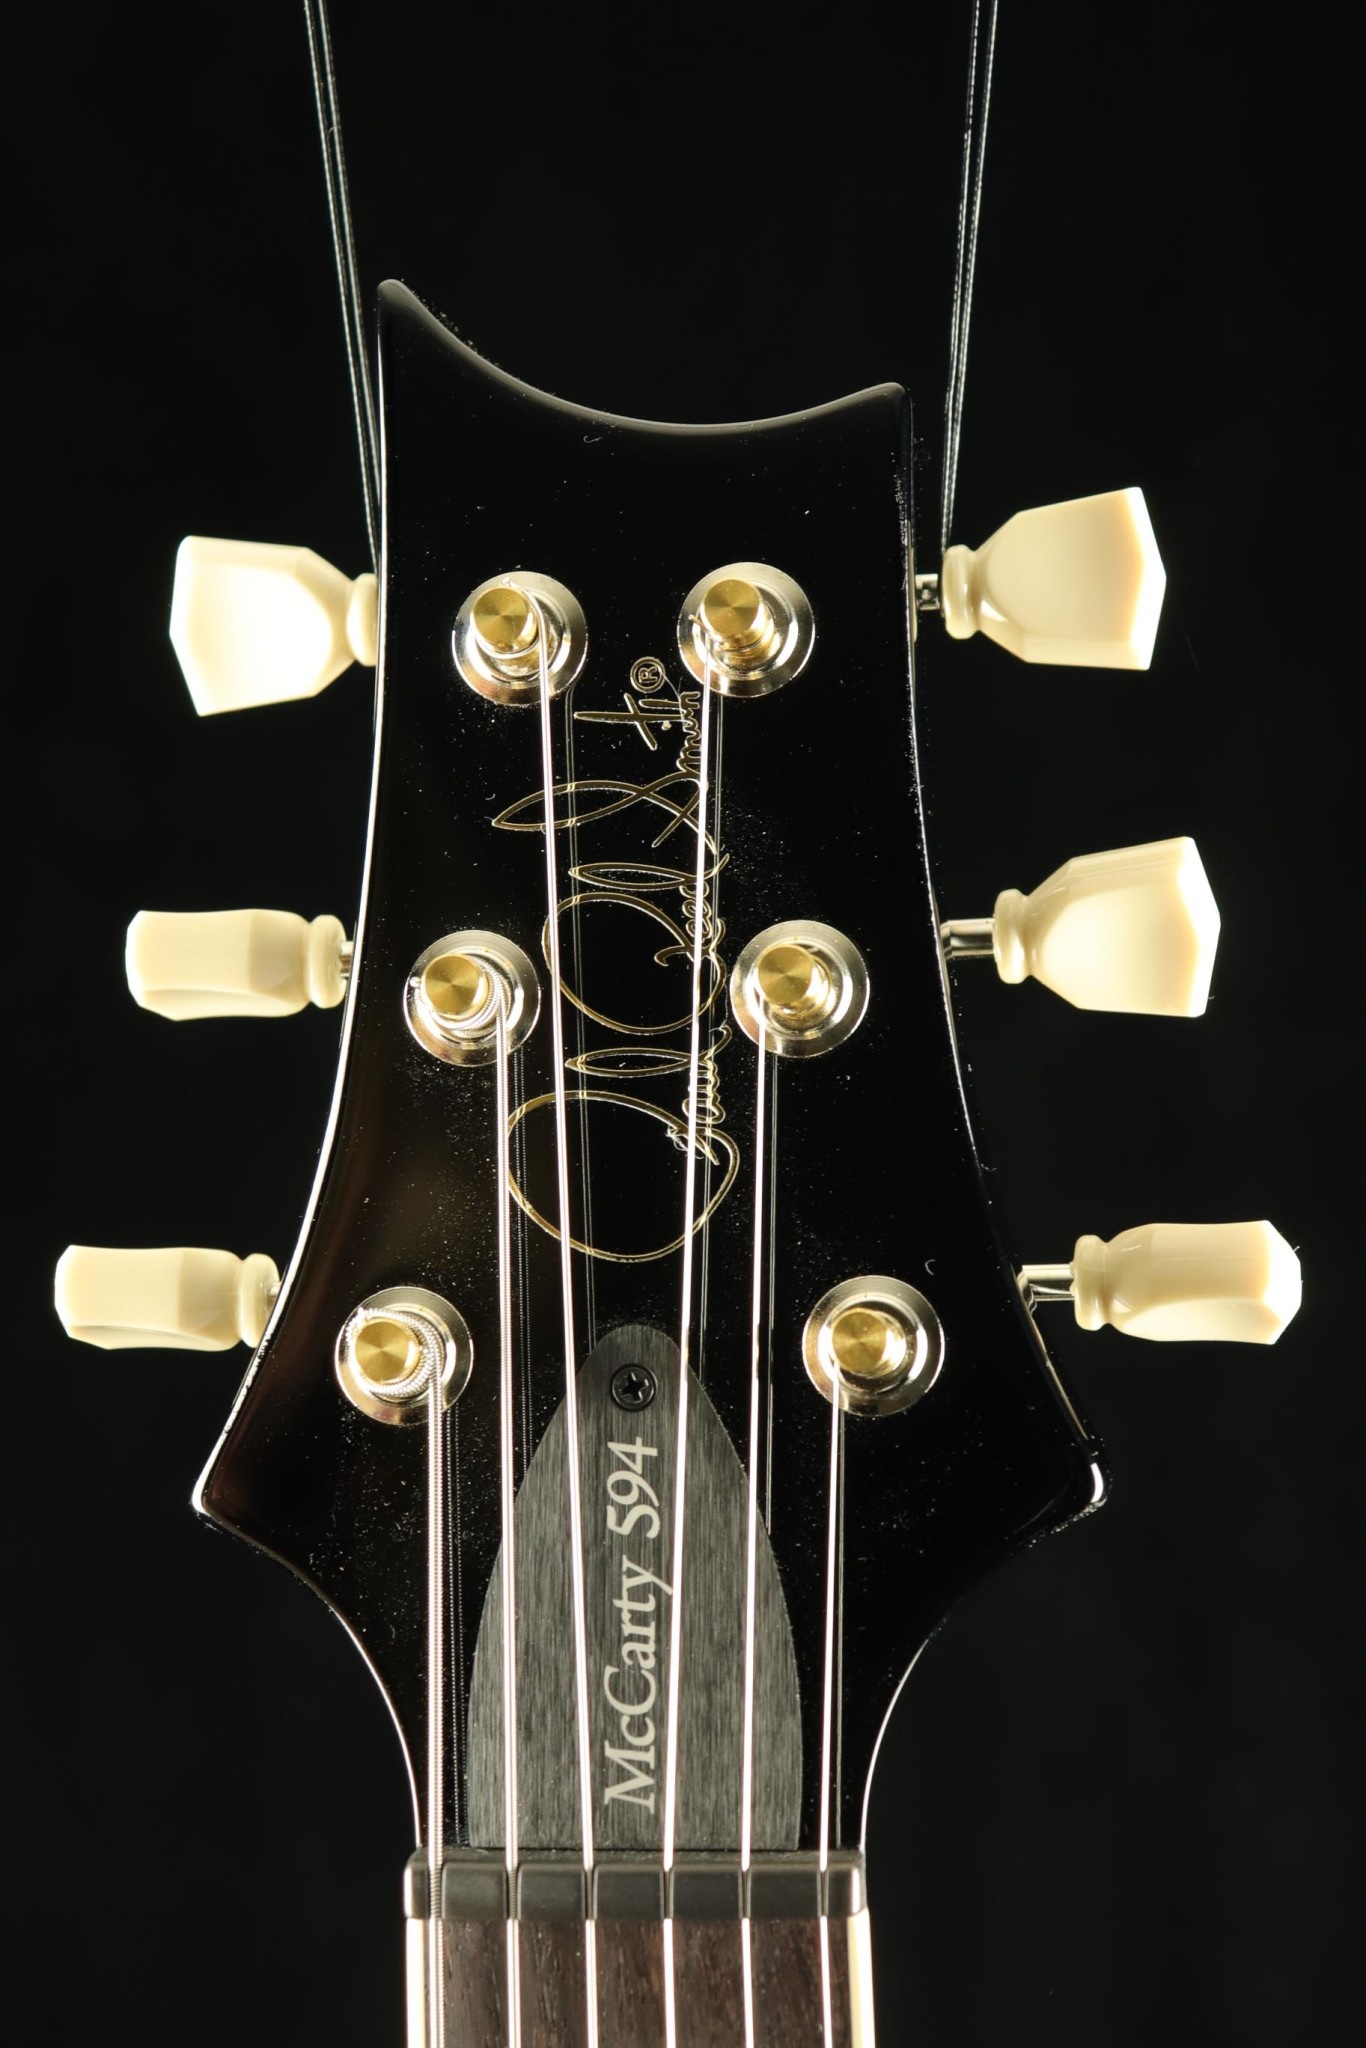 PRS Guitars PRS S2 McCarty 594 Singlecut Electric Guitar - Whale Blue w/ Black Wrap Burst